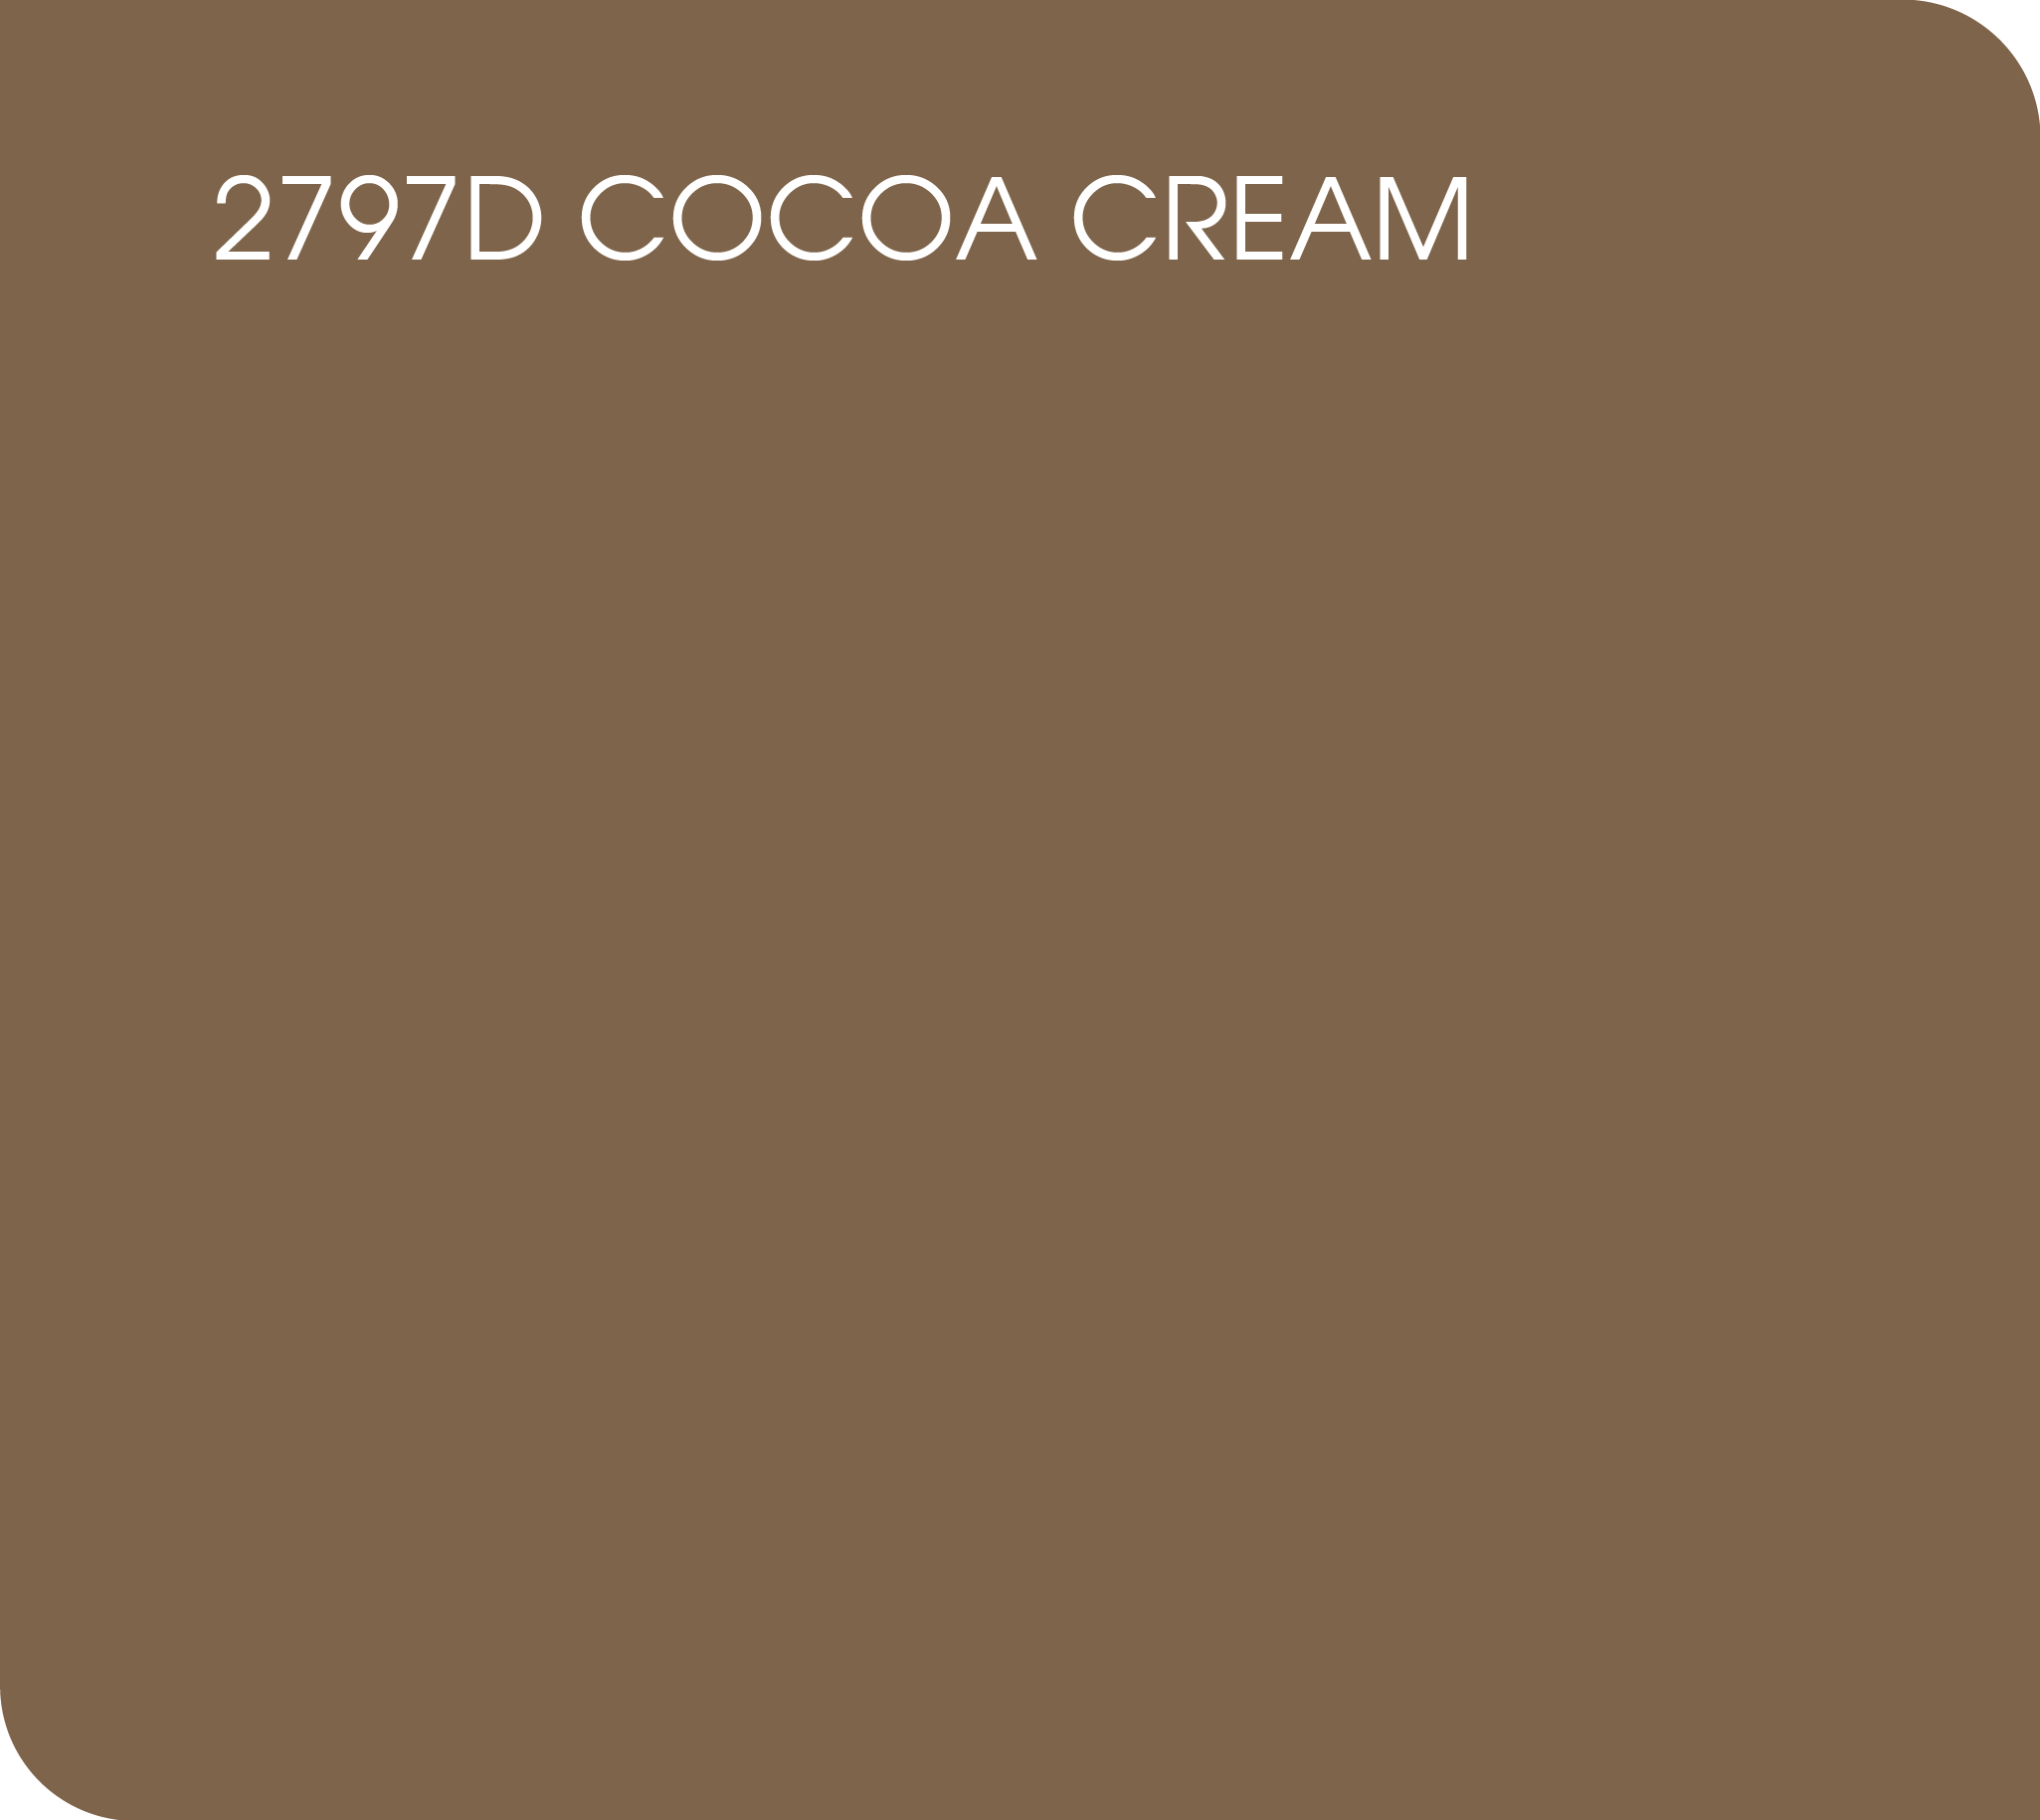 cocoa cream 2797D